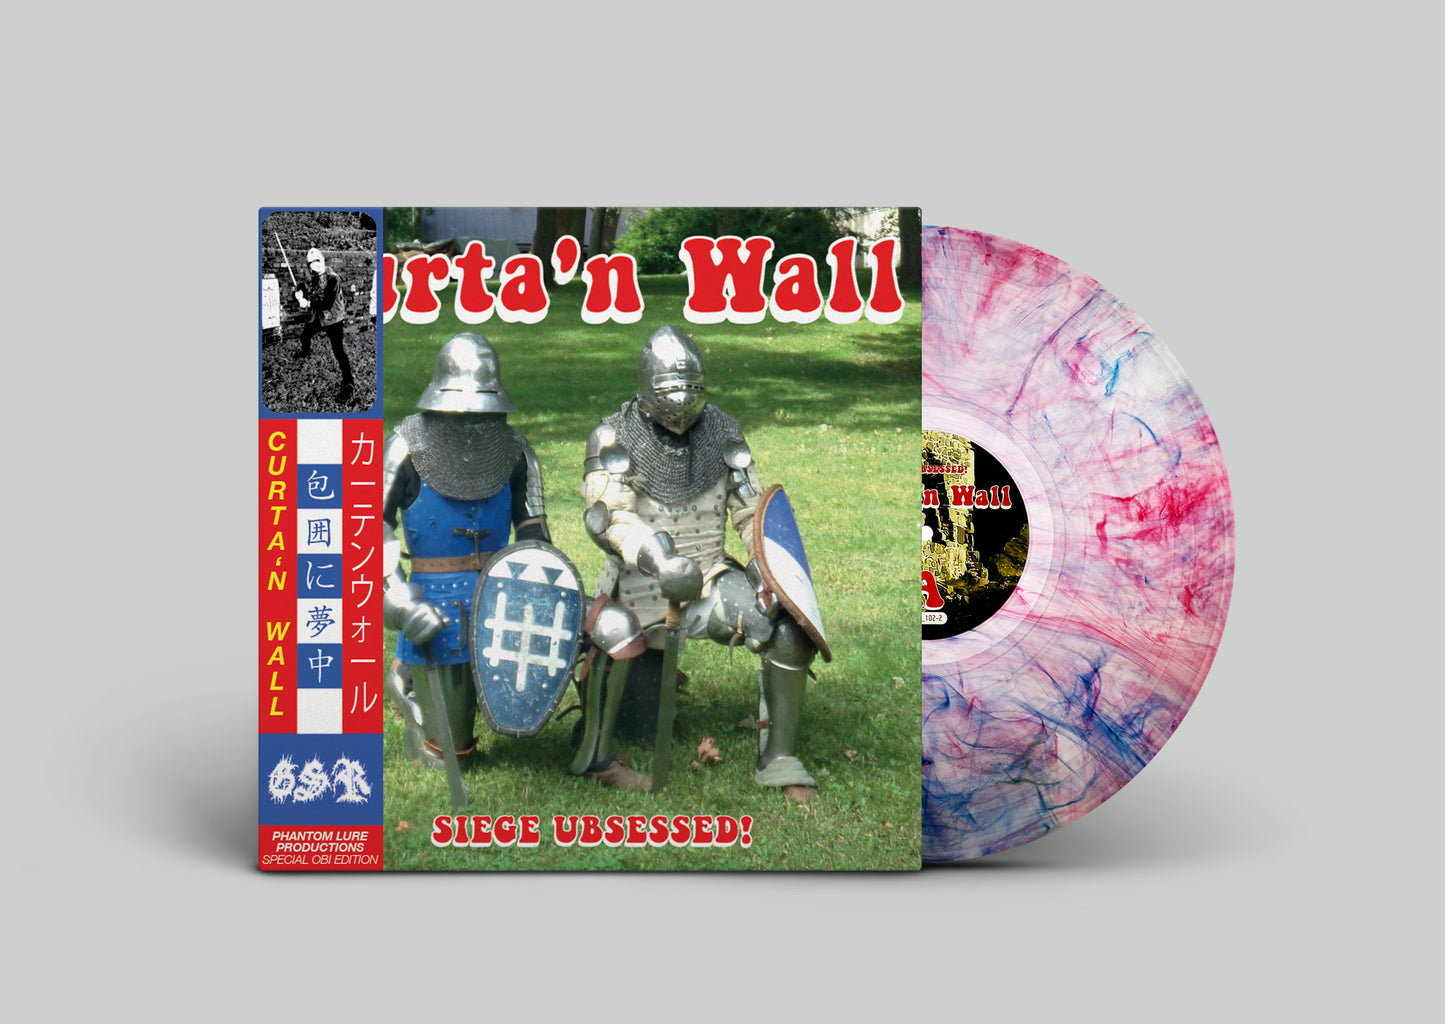 CURTA'N WALL - Siege Ubsessed LP